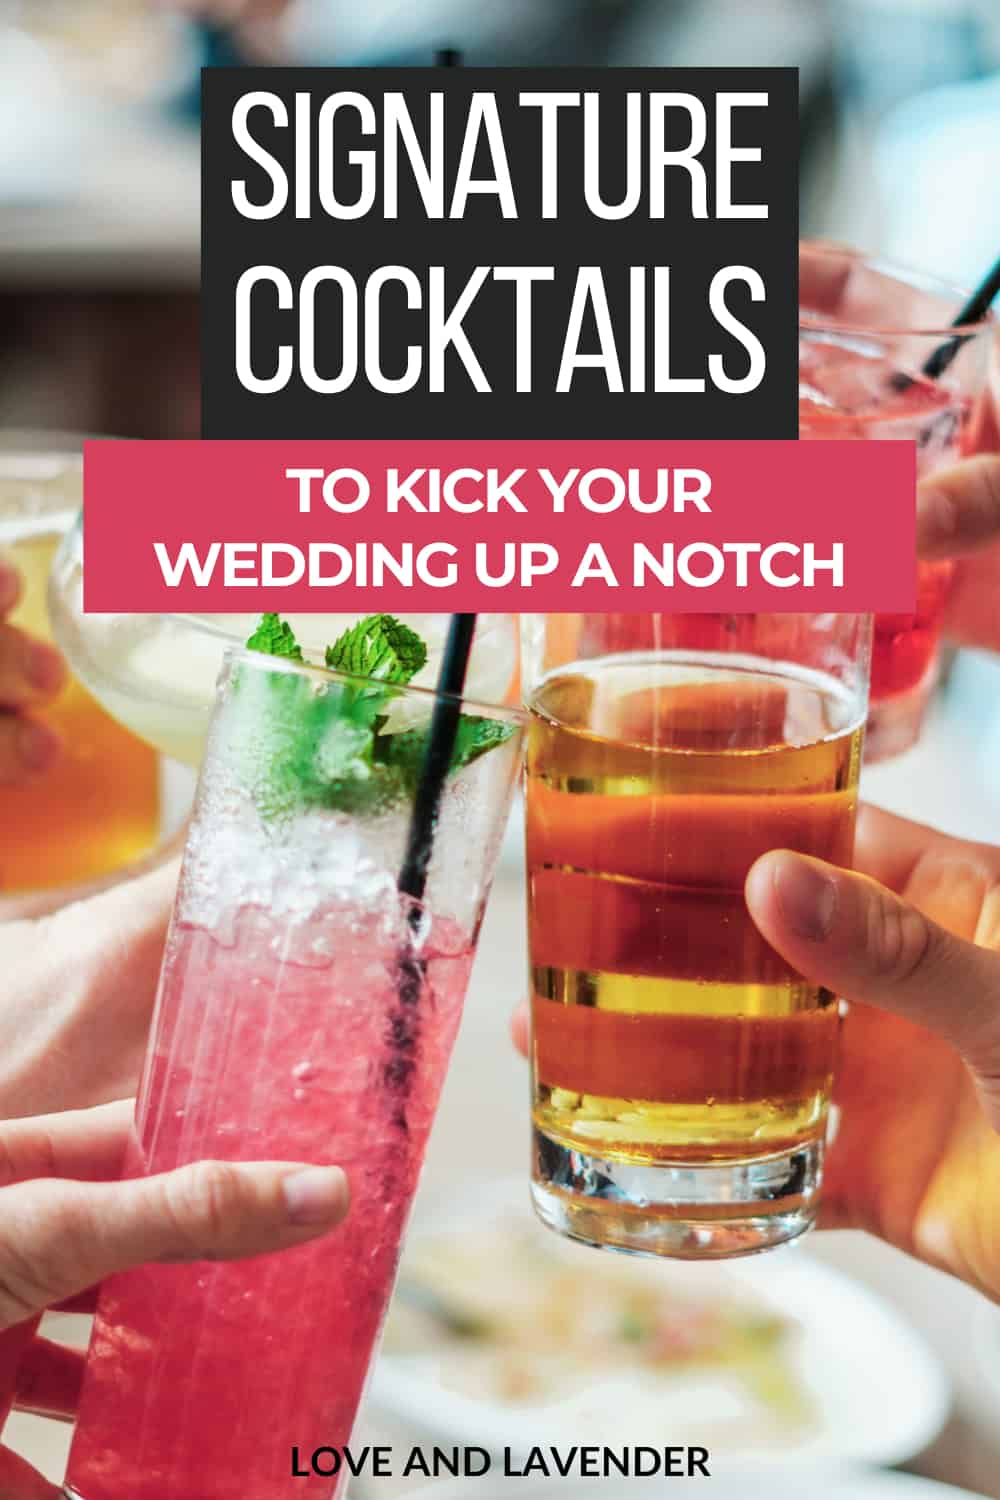 Broche Pinterest - Cocktails signature pour donner un coup de fouet à votre mariage